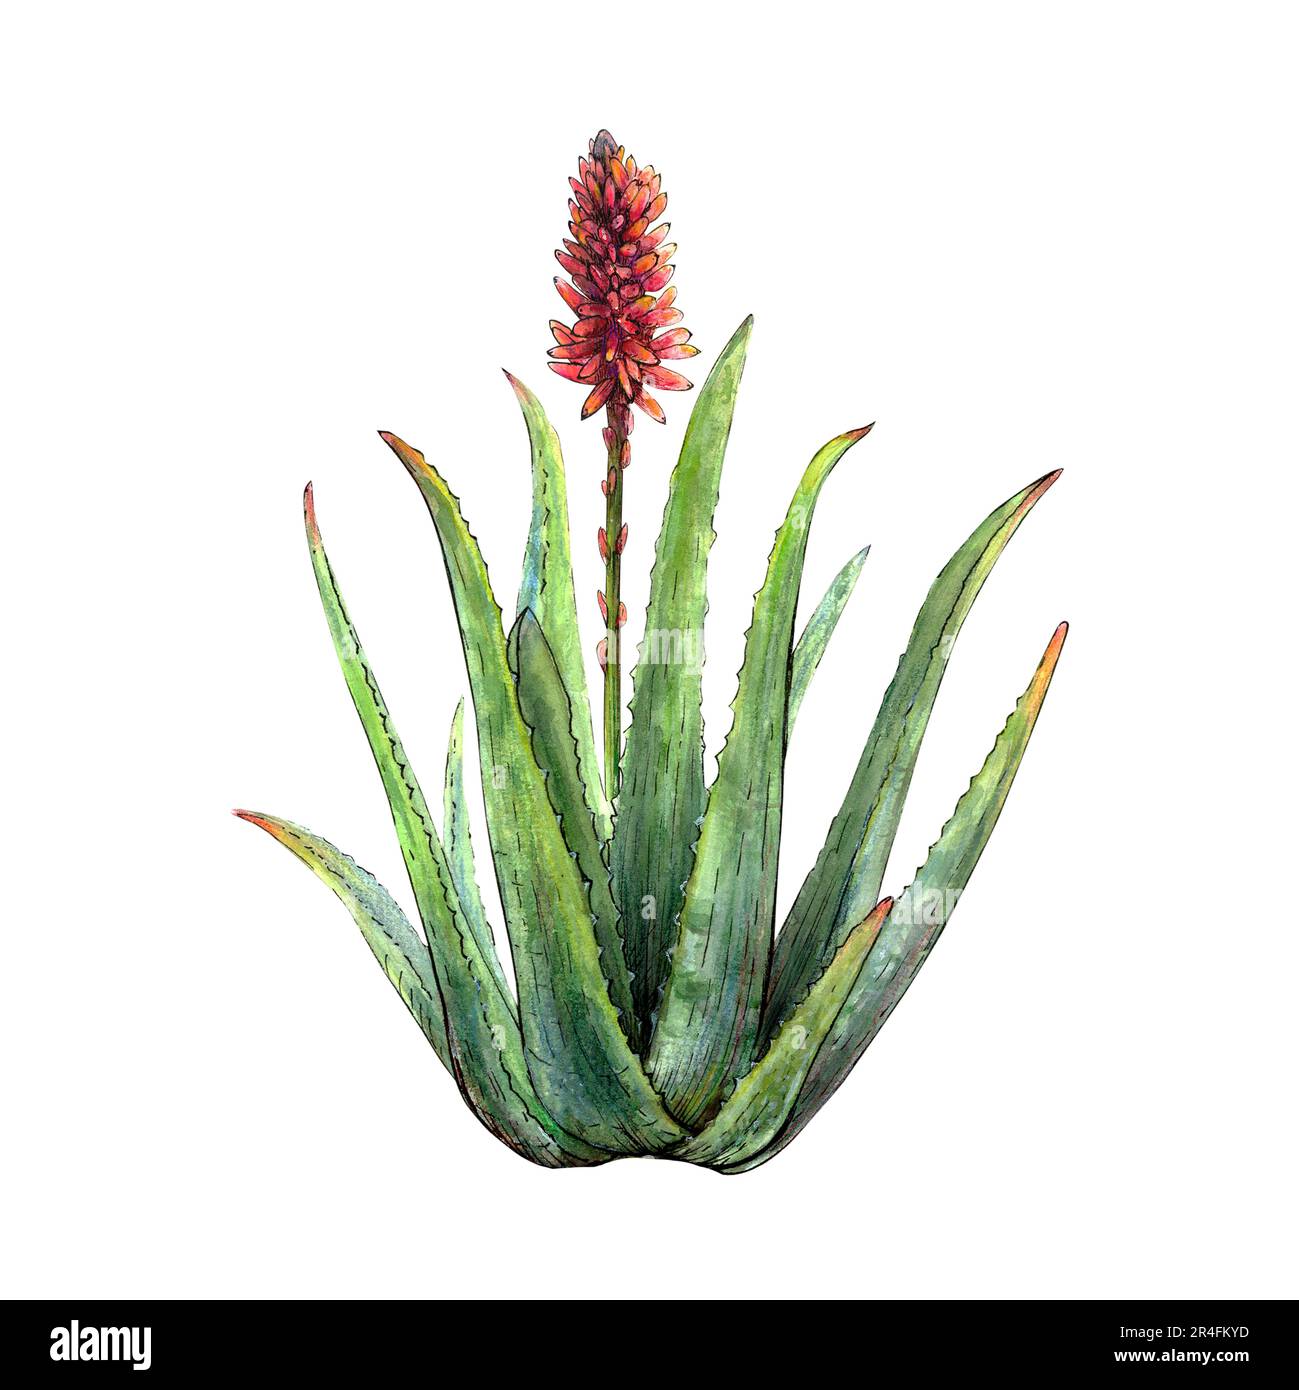 Aquarelle dessin botanique de la plante de vera d'aloès avec des tiges, des feuilles, des fleurs sur fond blanc. Image réaliste et détaillée pour l'illustration, les autocollants Banque D'Images